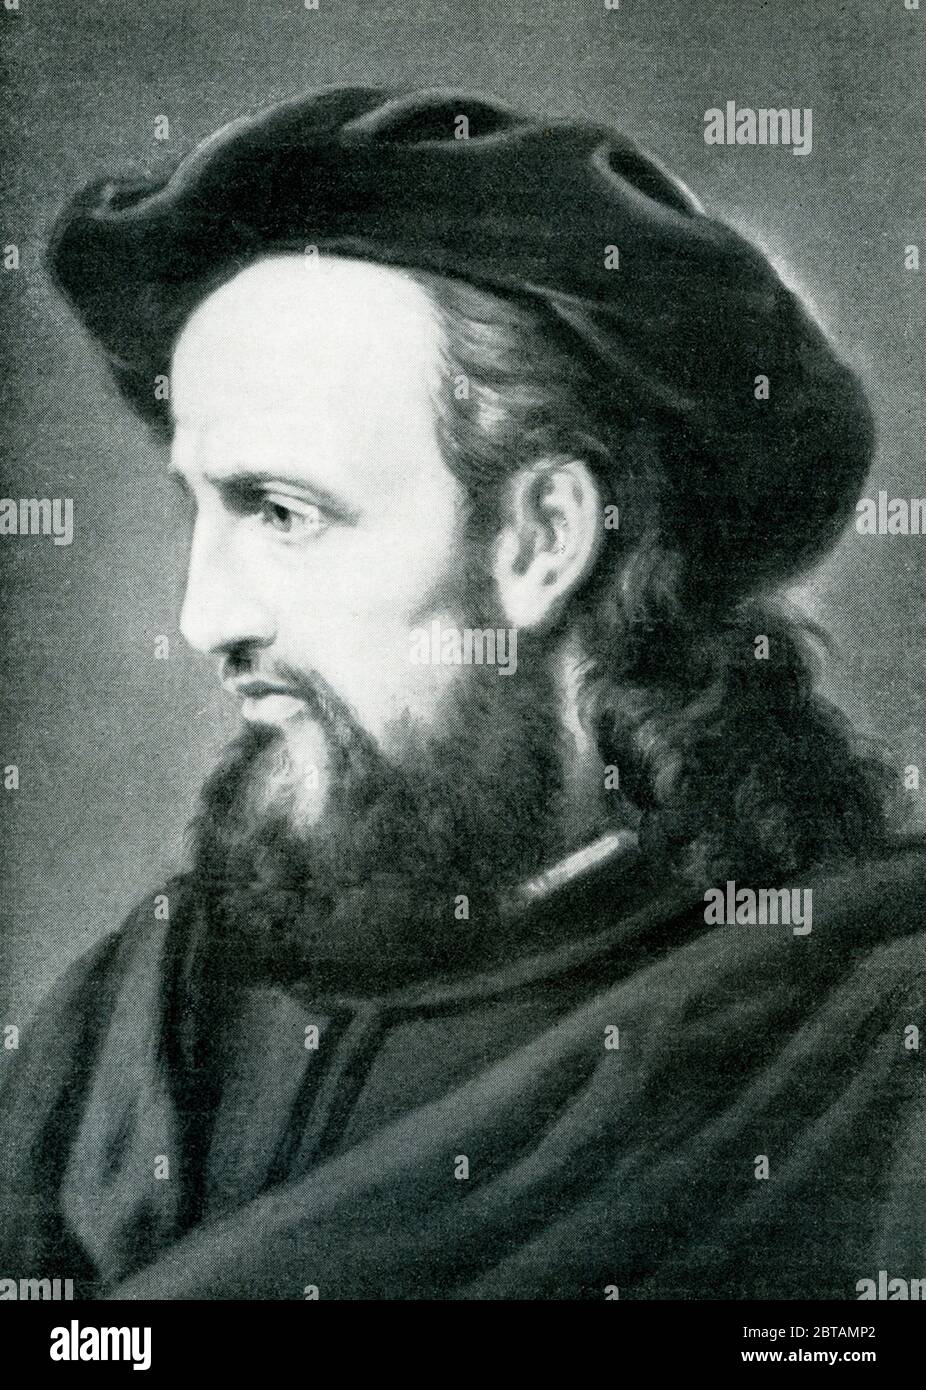 Correggio, nom d'Antonio Allegri, ( 1494-1534), est le plus important peintre de la Renaissance de l'école de Parme, dont les œuvres tardives ont influencé le style de nombreux artistes baroques et rococo. Le mariage mystique de Sainte-Catherine (c. 1526) est parmi les plus beaux de ses peintures poétiques à l'huile tardive. Banque D'Images